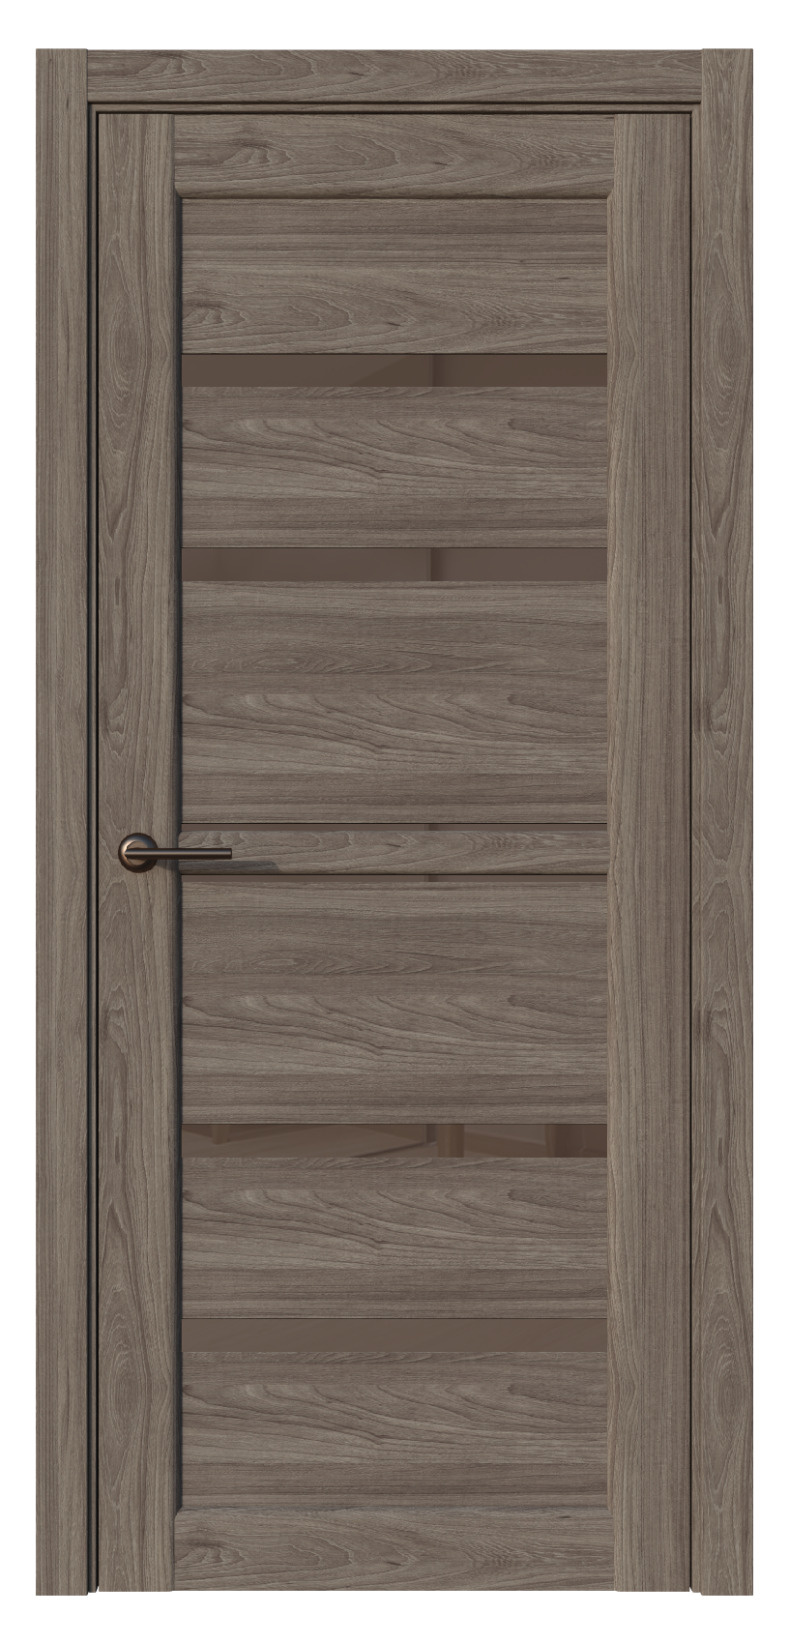 Questdoors Межкомнатная дверь QX5, арт. 17582 - фото №1